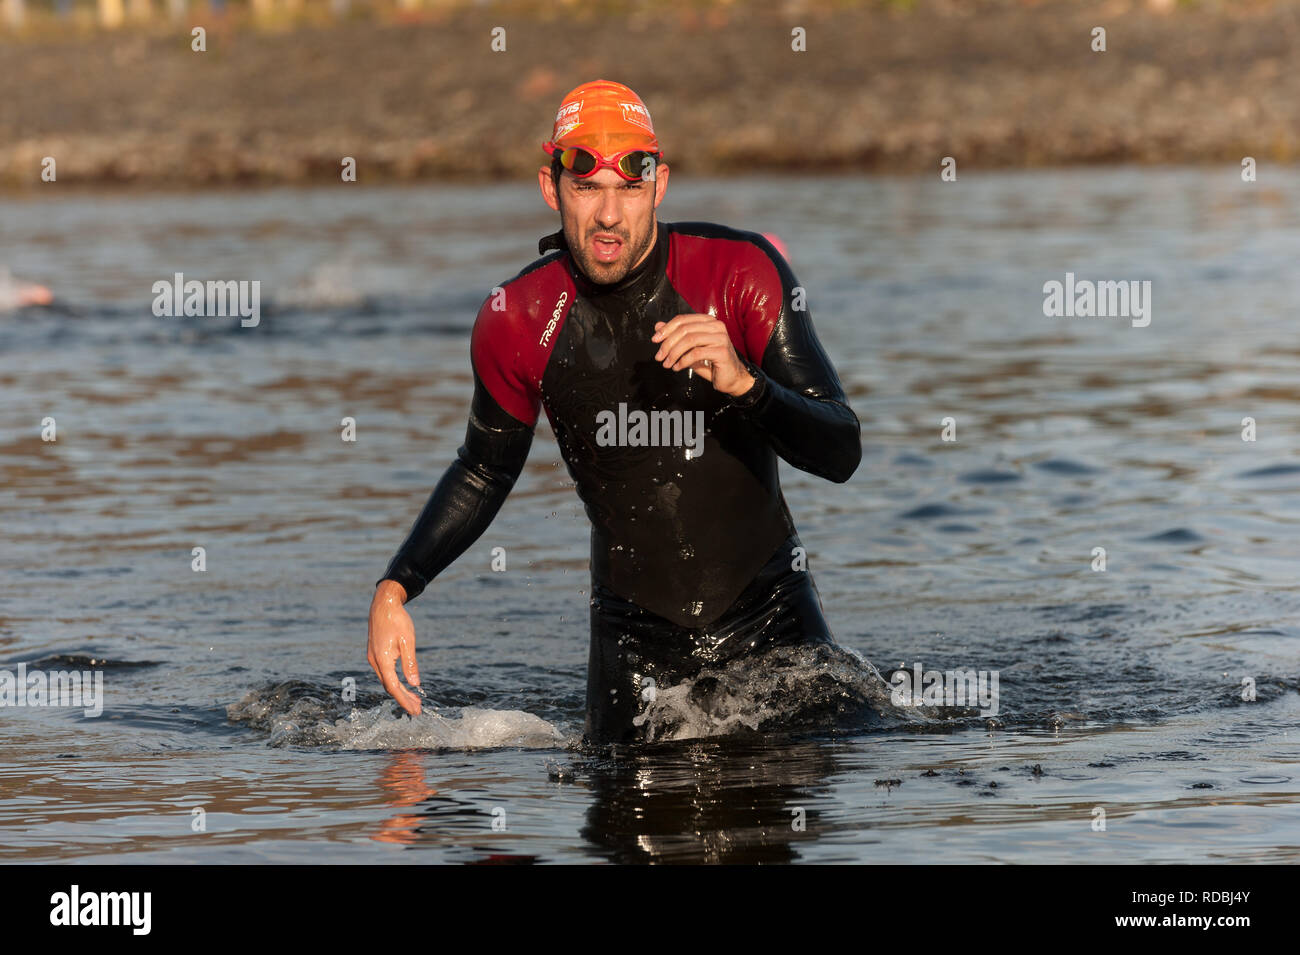 Homme sortant de l'eau après l'étape de natation triathlon Ben Nevis Loch Linnhe Fort William U.K Banque D'Images